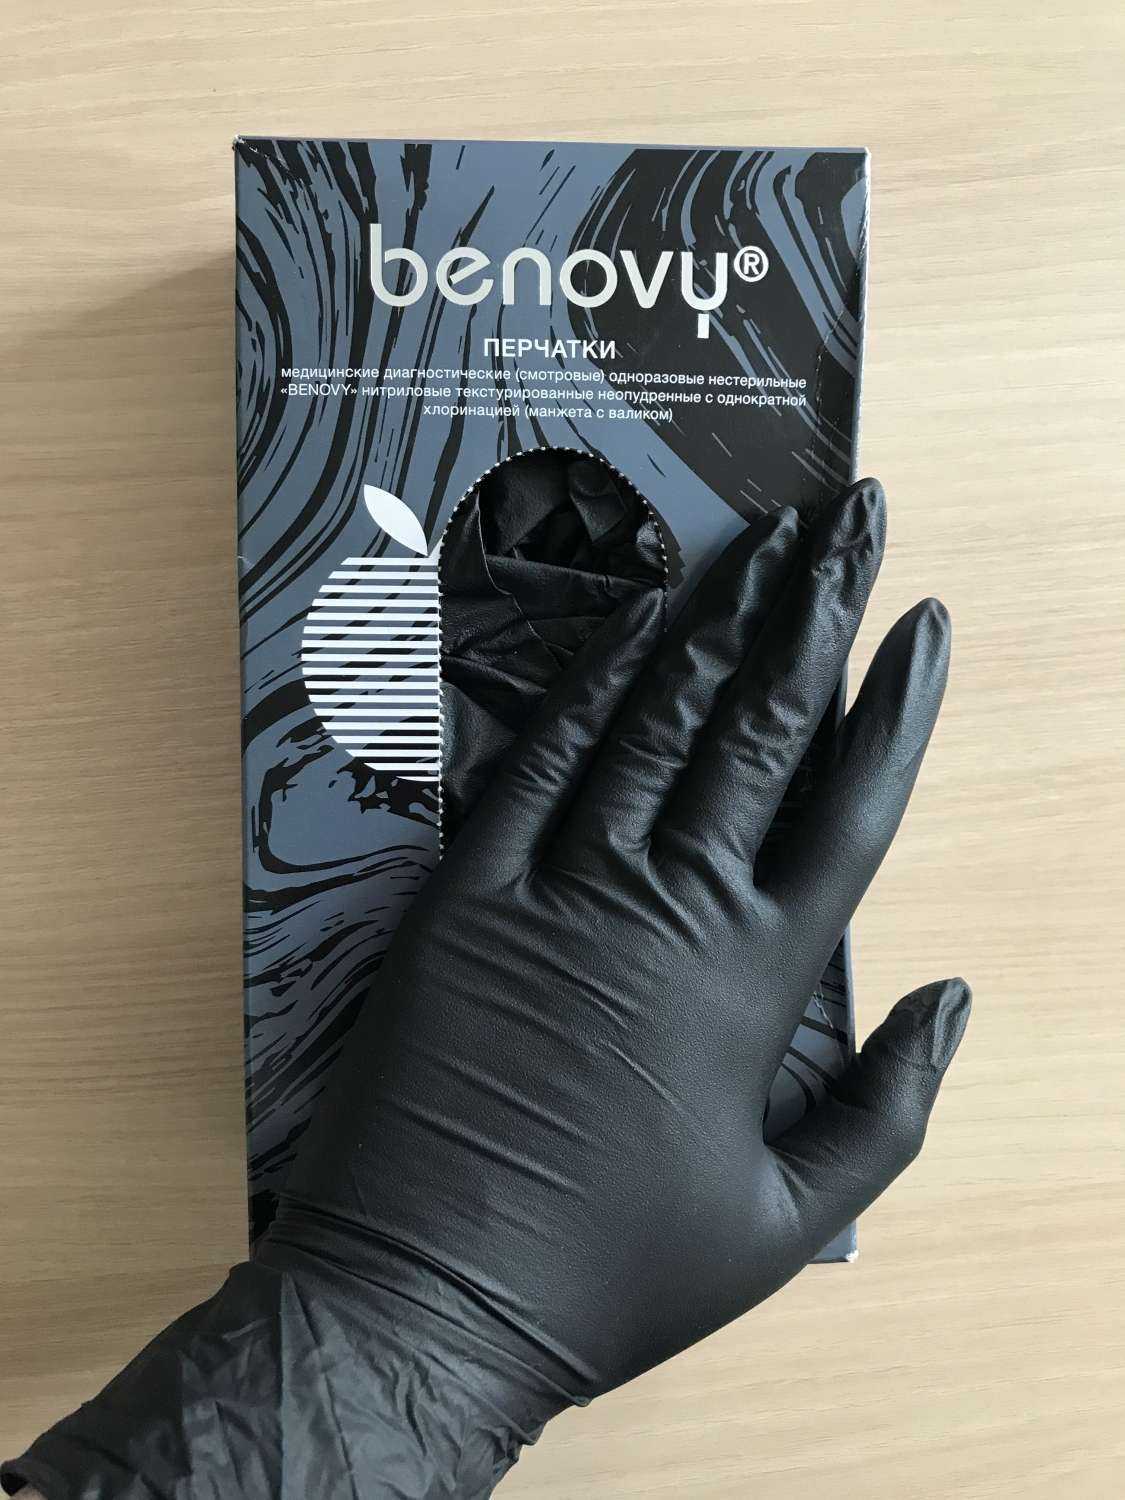 Benovy перчатки купить. Перчатки Бенови. Перчатки Benovy. Перчатки хорошие резиновые Бинови. Benovy руки в перчатках.